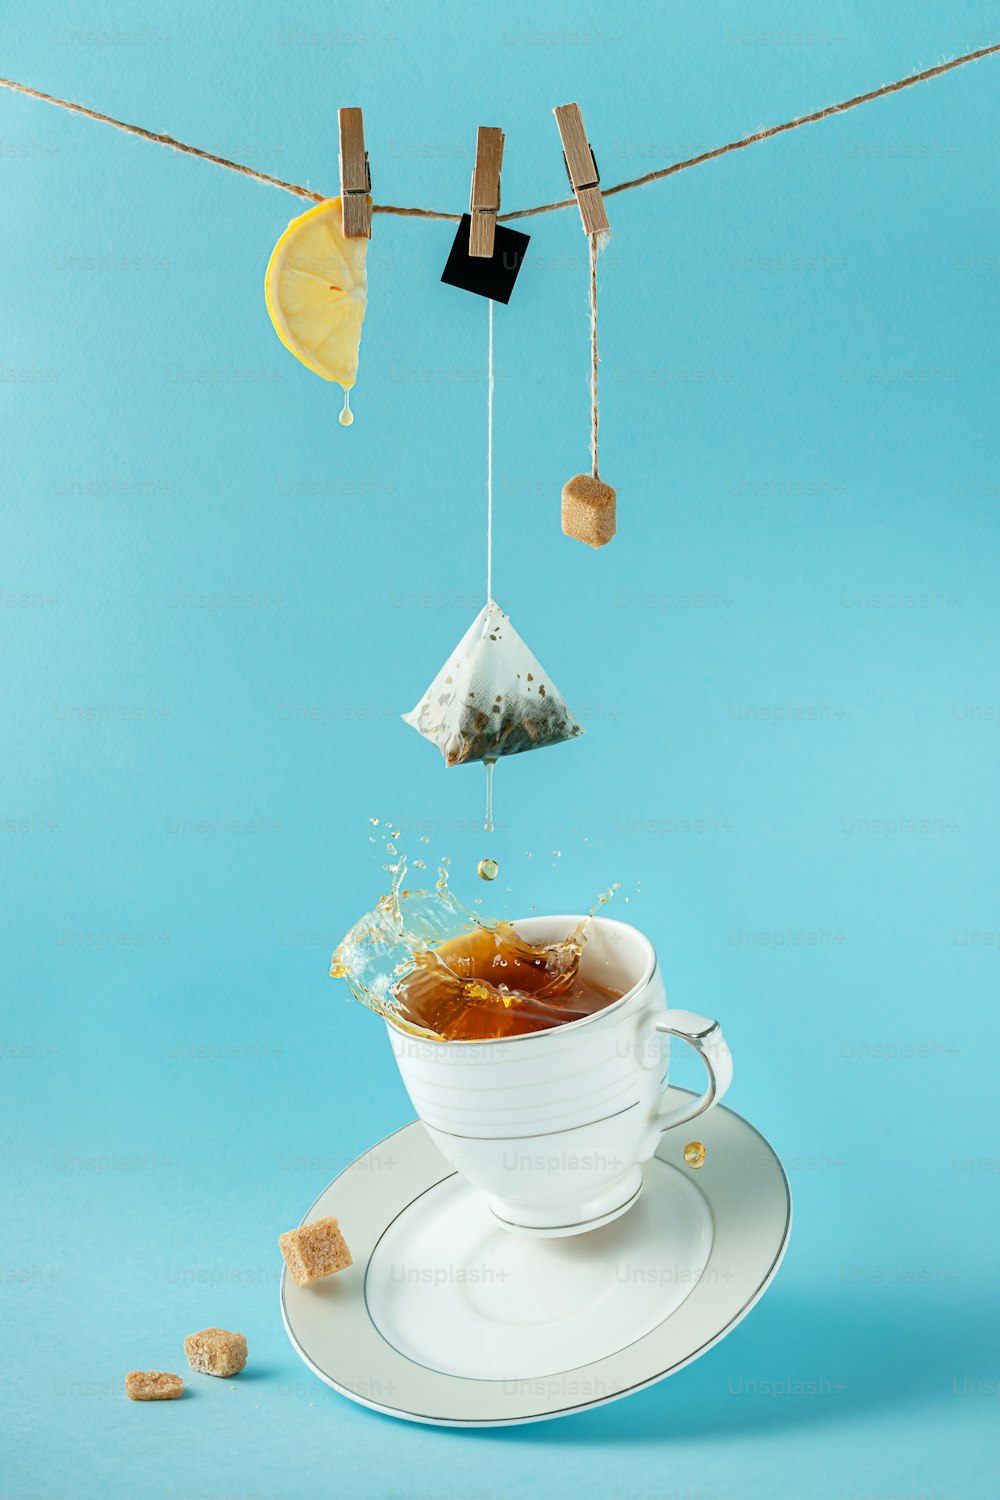 Teebeutel, Zitrone und Zucker hängen am Seil über spritzendem Tee in der Tasse auf blauem Hintergrund. Kreatives Stillleben